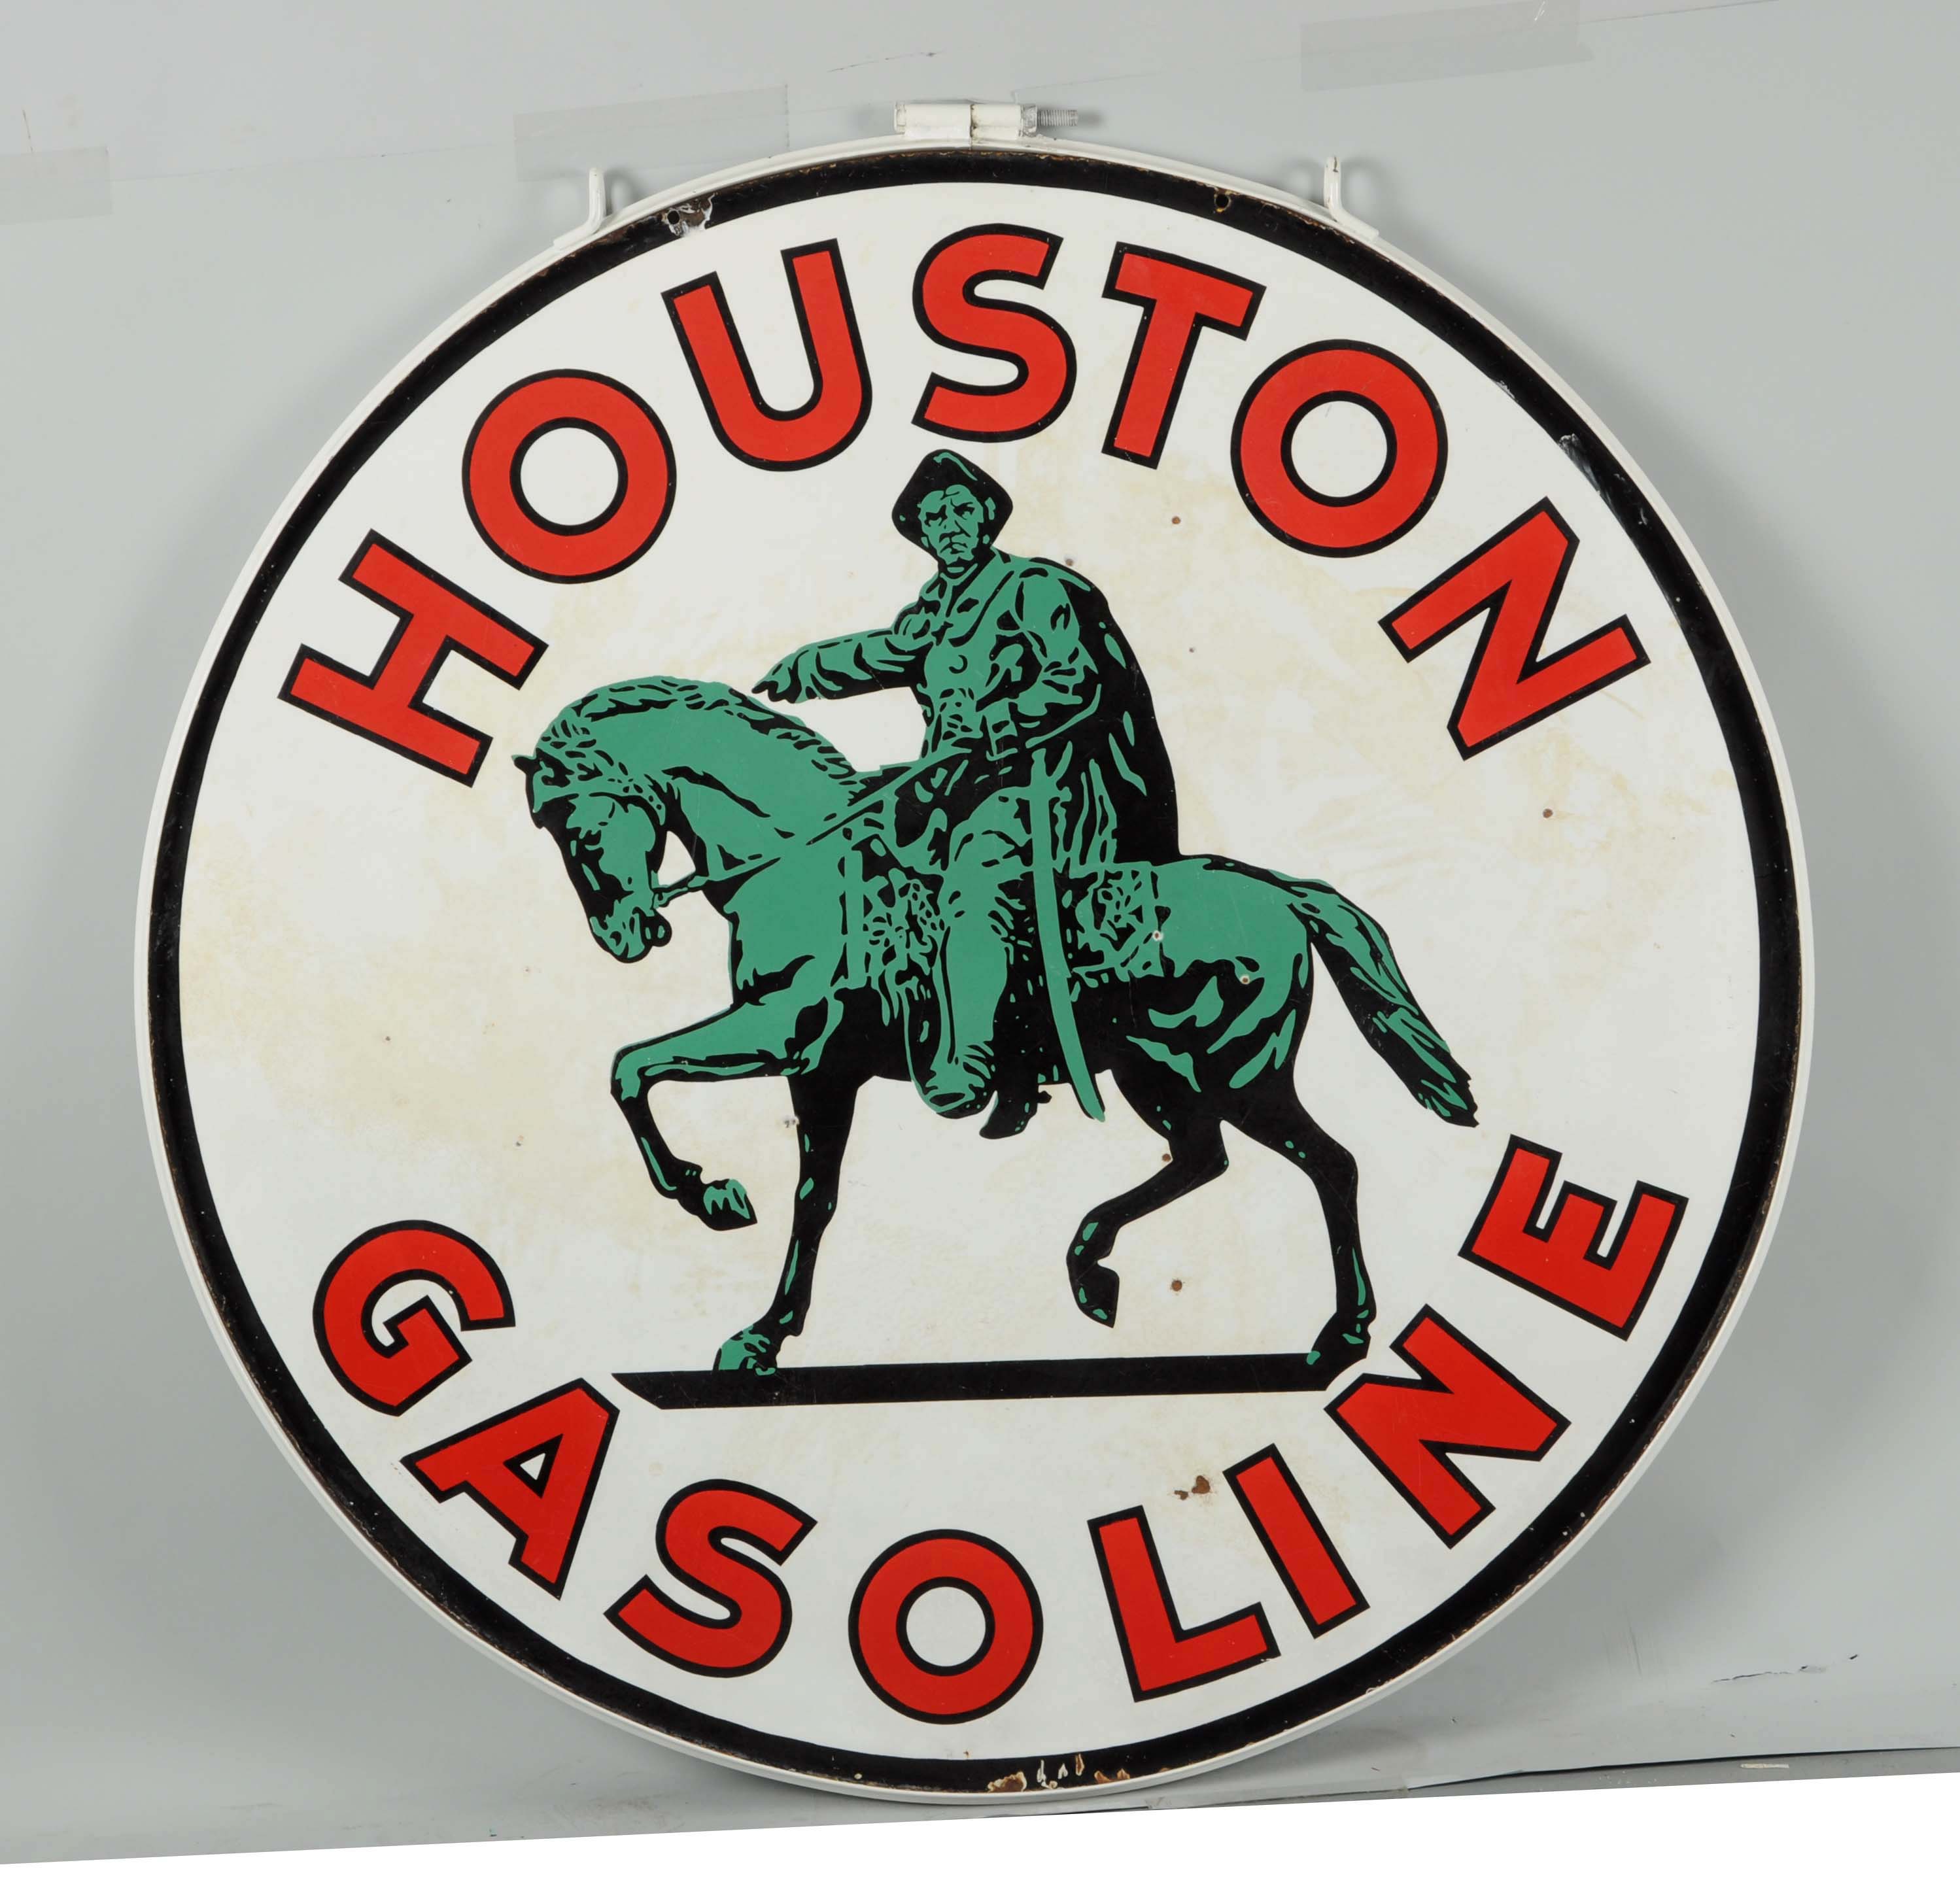 Houston Gasoline w/ Logo Porcelain Sign, Estimated at $15,000-30,000.